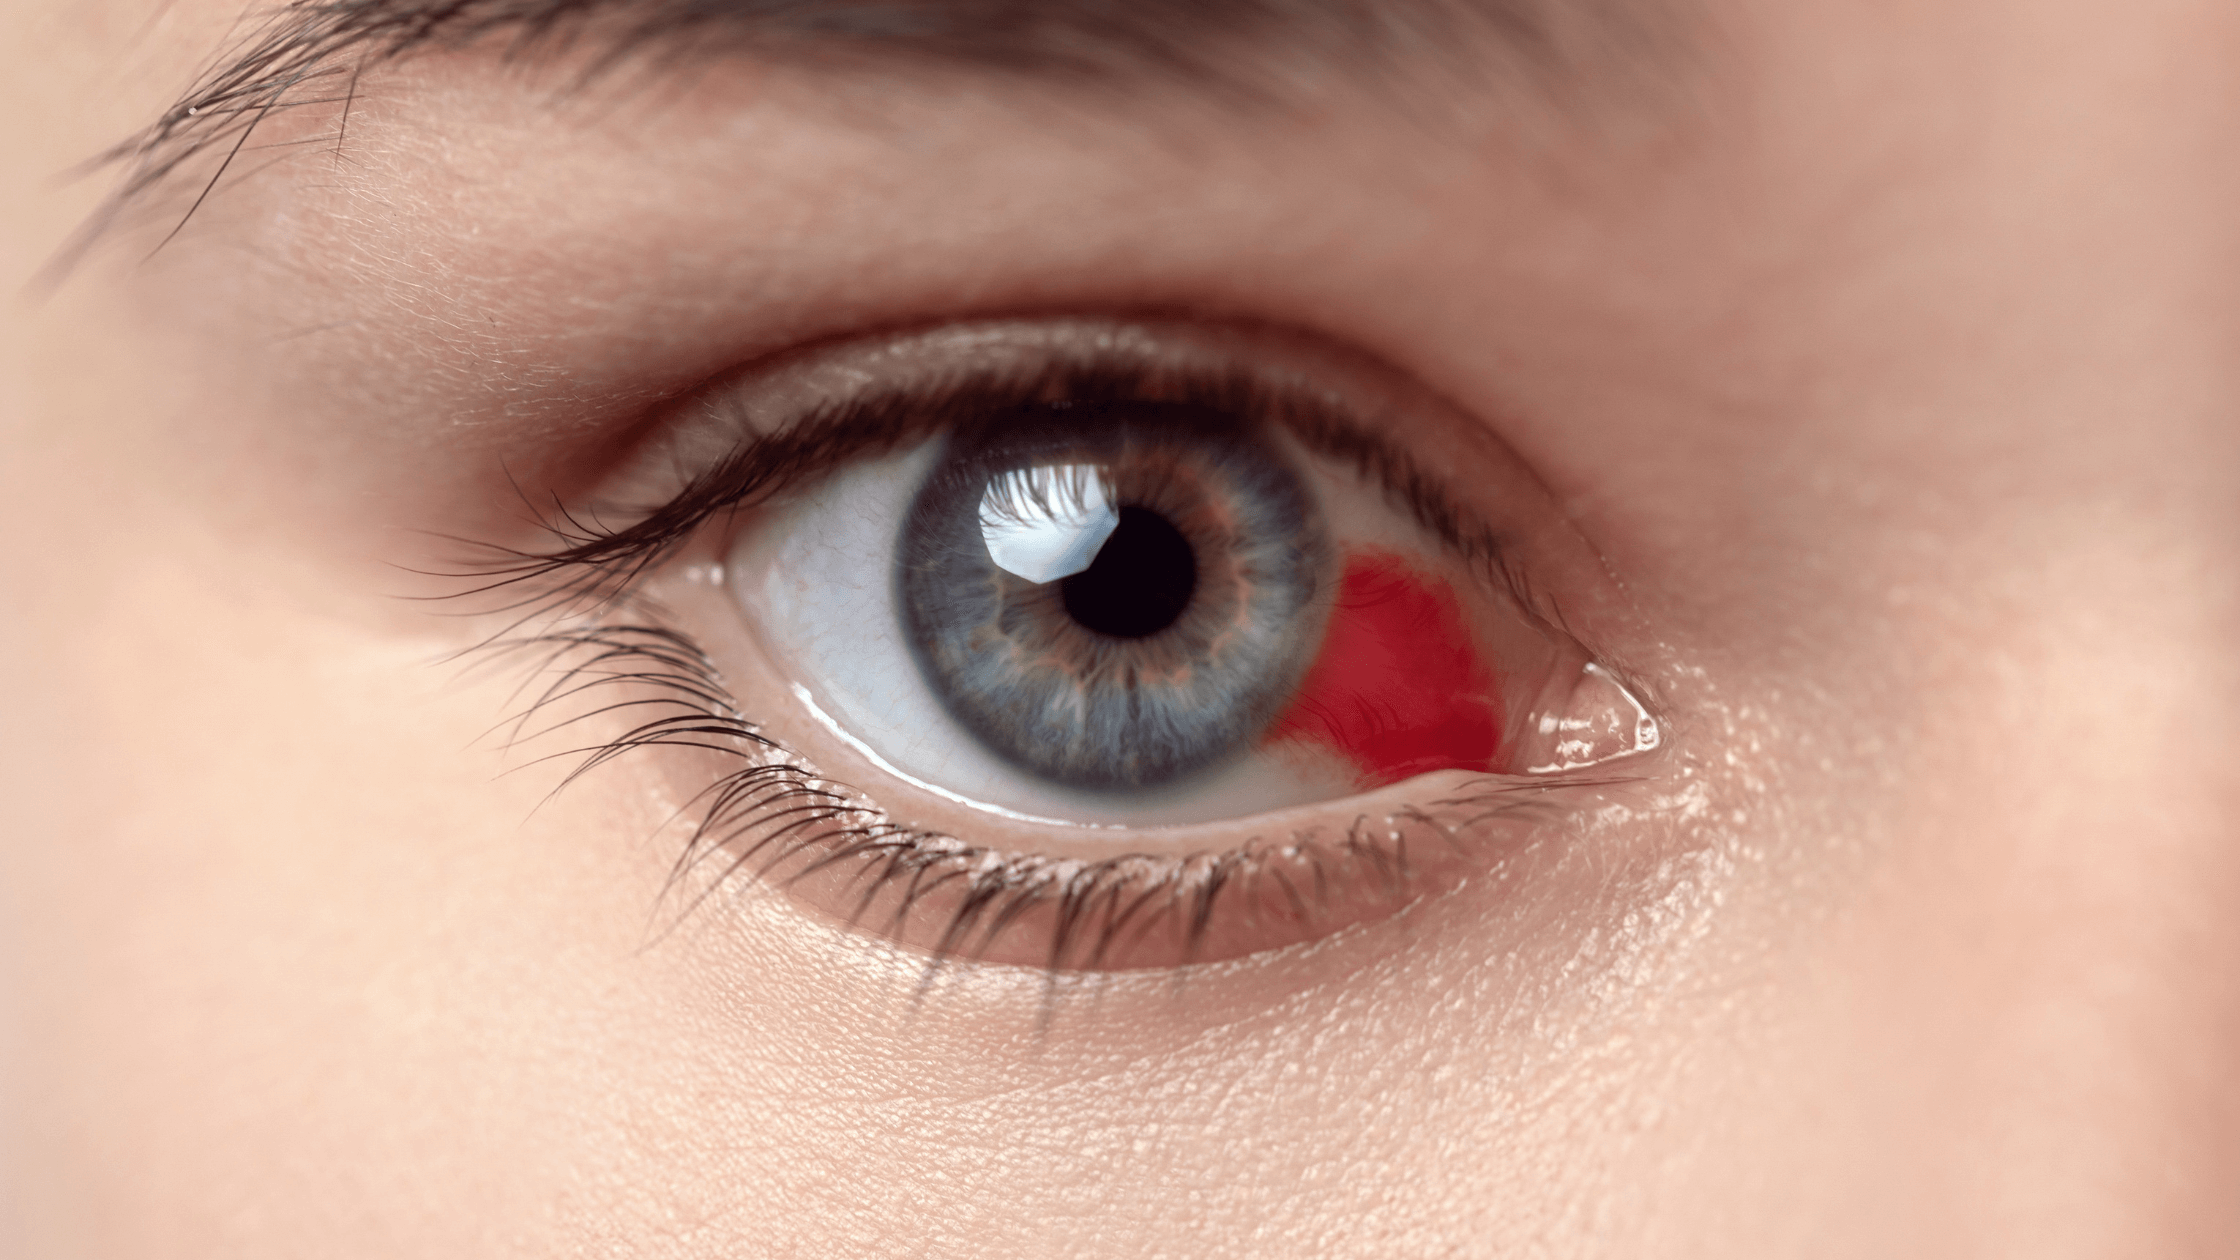 Bloodshot eye, eye care, eye condition